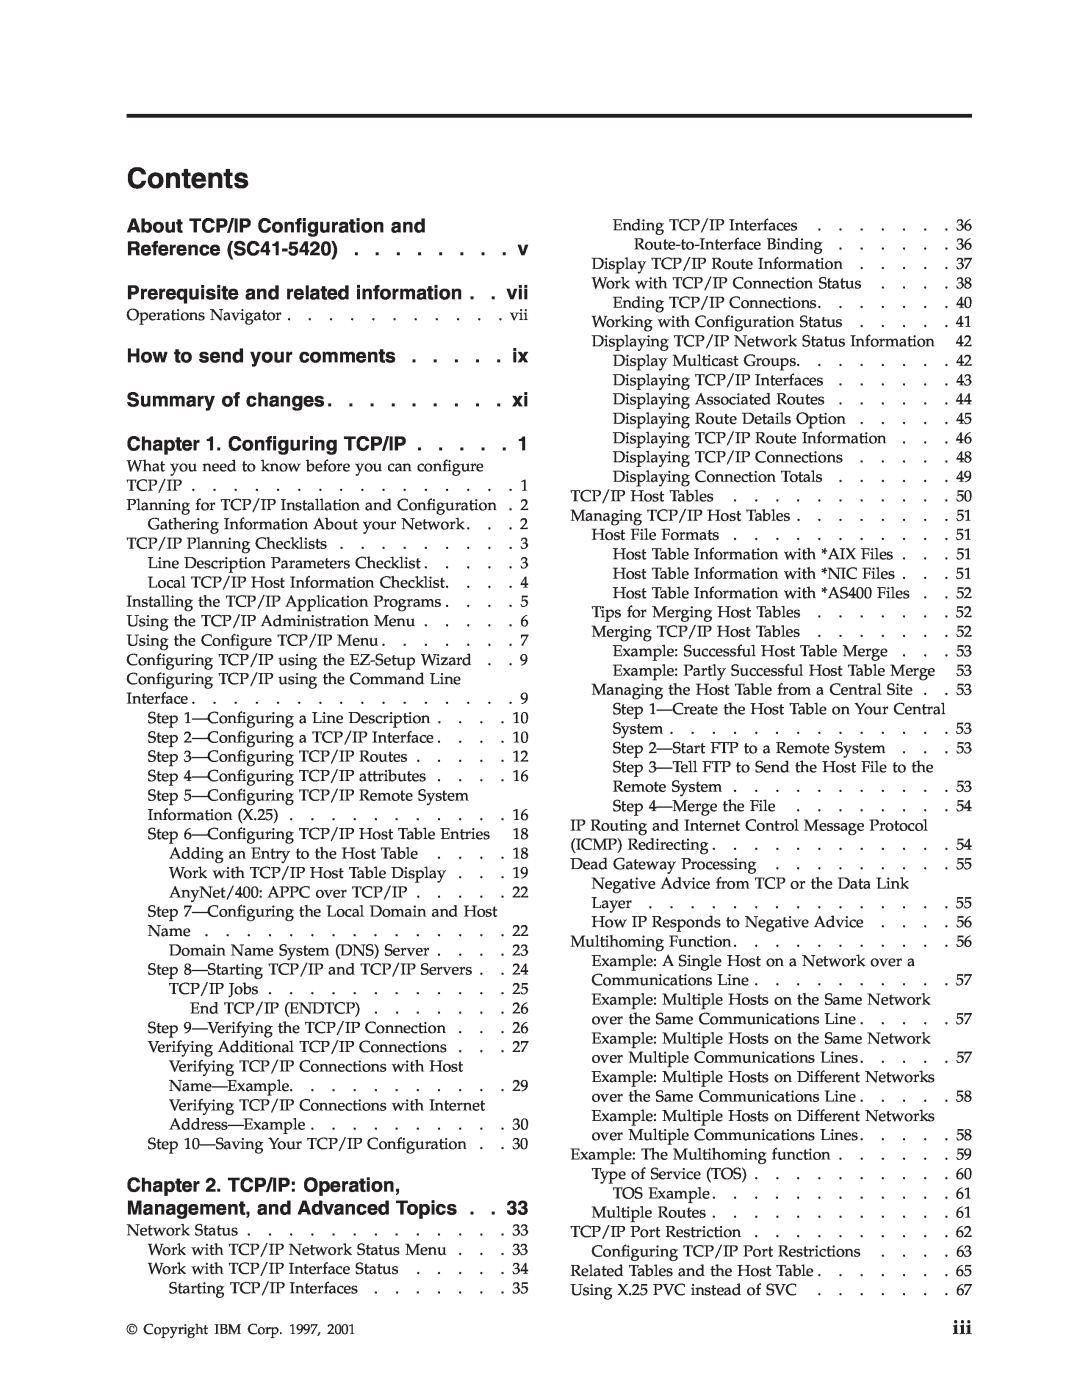 IBM SC41-5420-04 manual Contents 